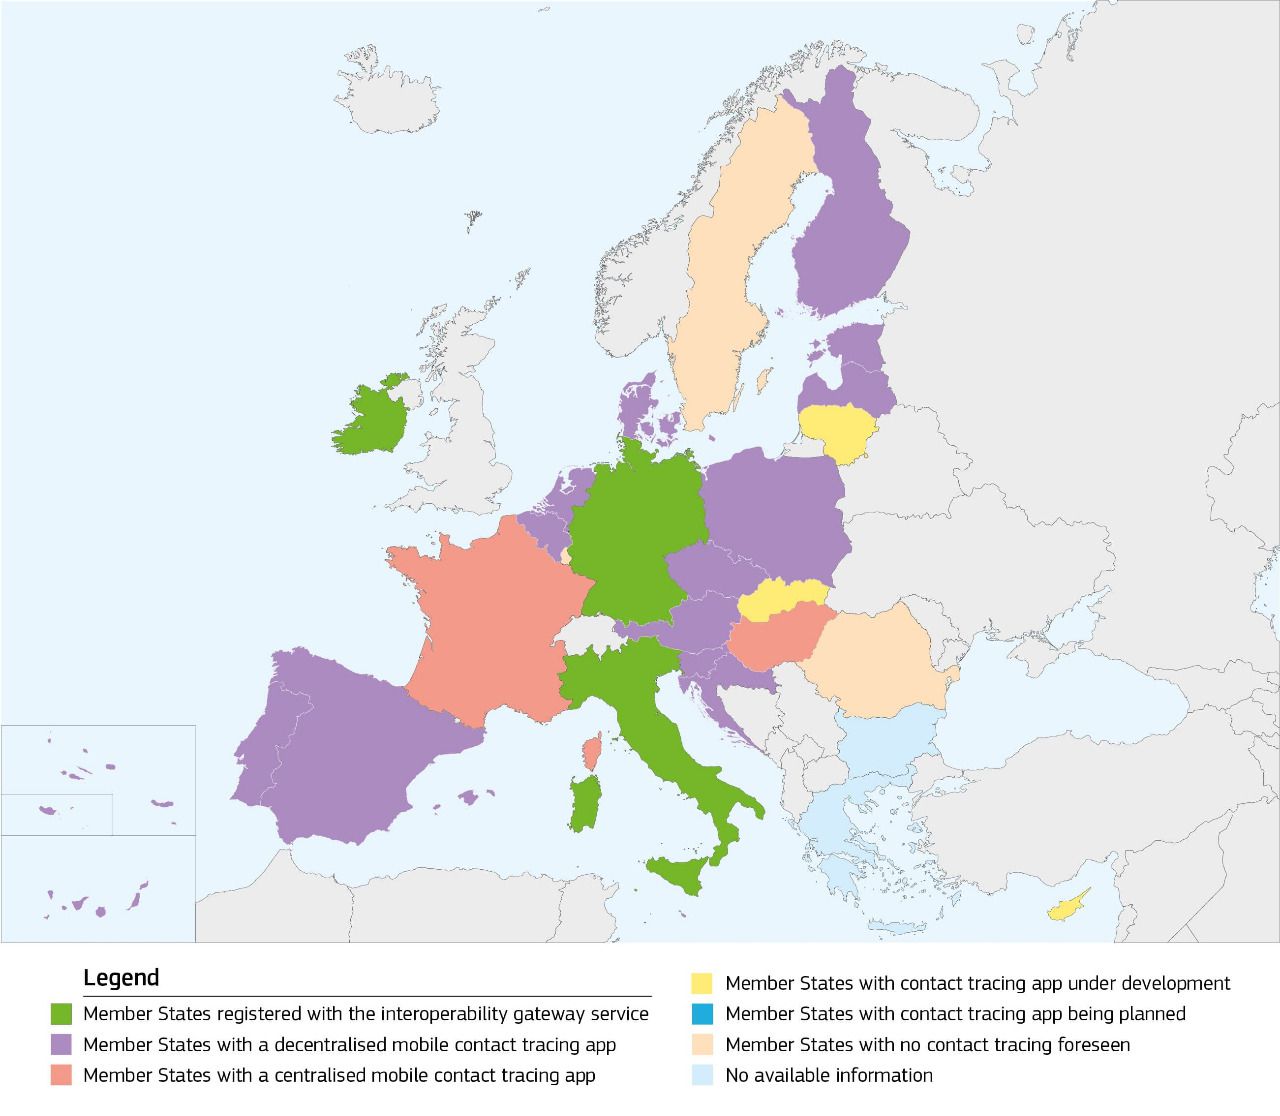 Mapa europeo de interoperabilidad de las apps de rastreo. Fuente: Comisión Europea